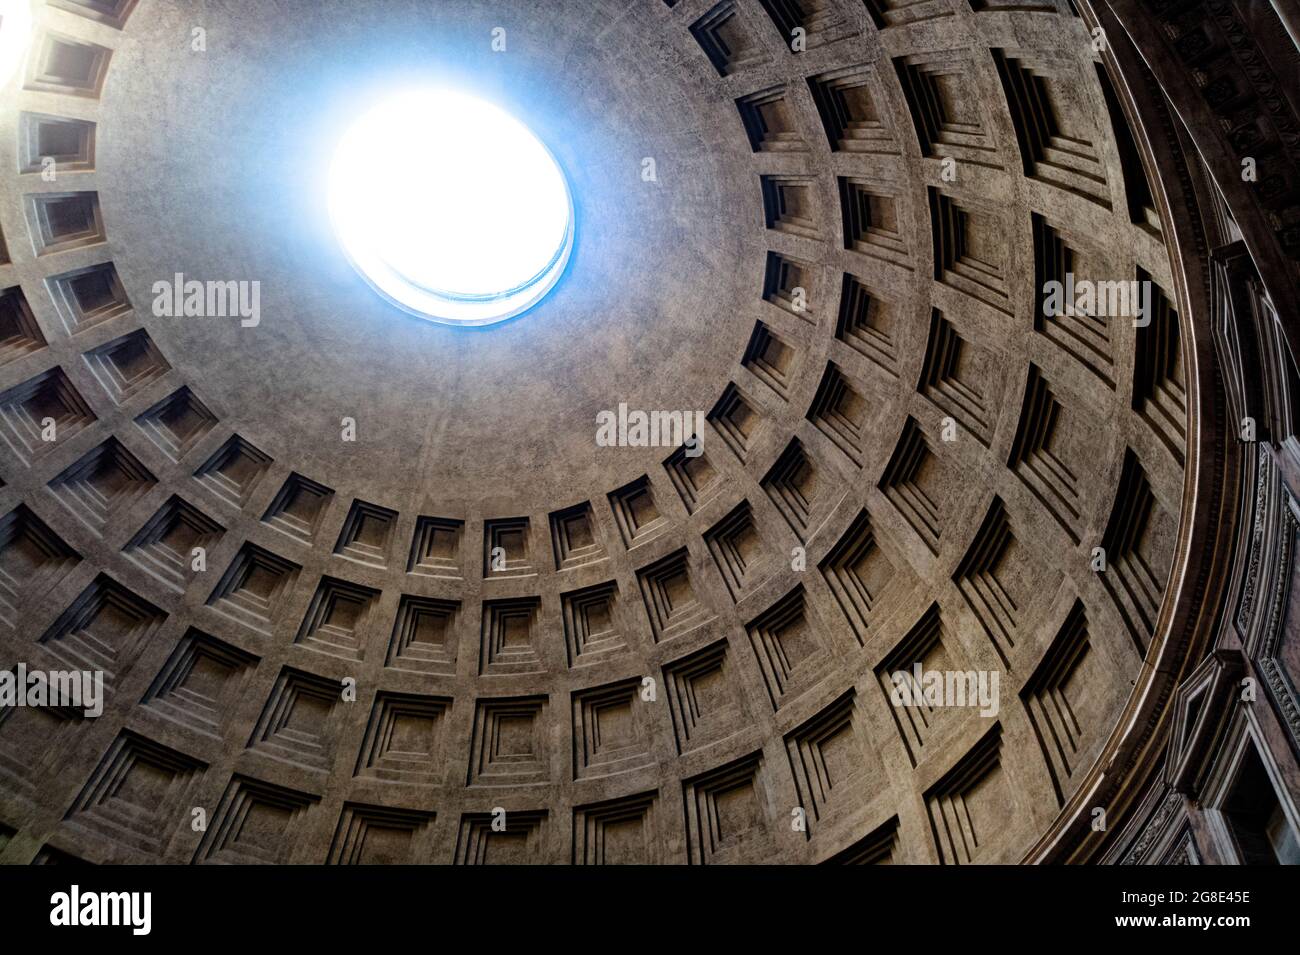 Europe - Italie, capitale Rome : vue sur le dôme du Panthéon considéré comme le plus grand dôme en béton non renforcé au monde. Banque D'Images